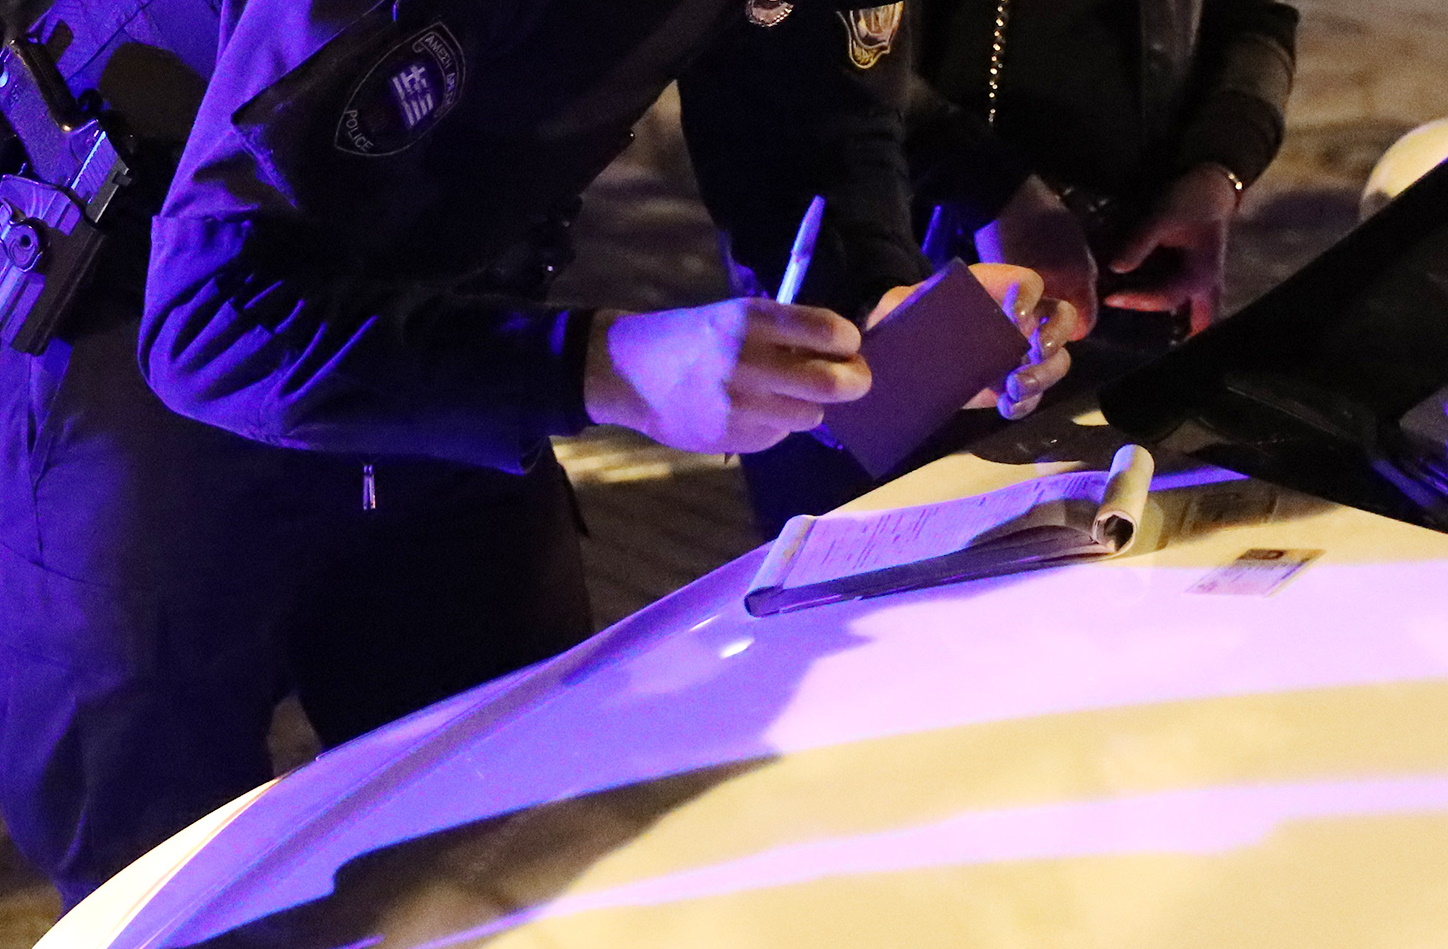 Αστυνομικός έκοψε πρόστιμο σε αστυνομικό γιατί δε φορούσε μάσκα